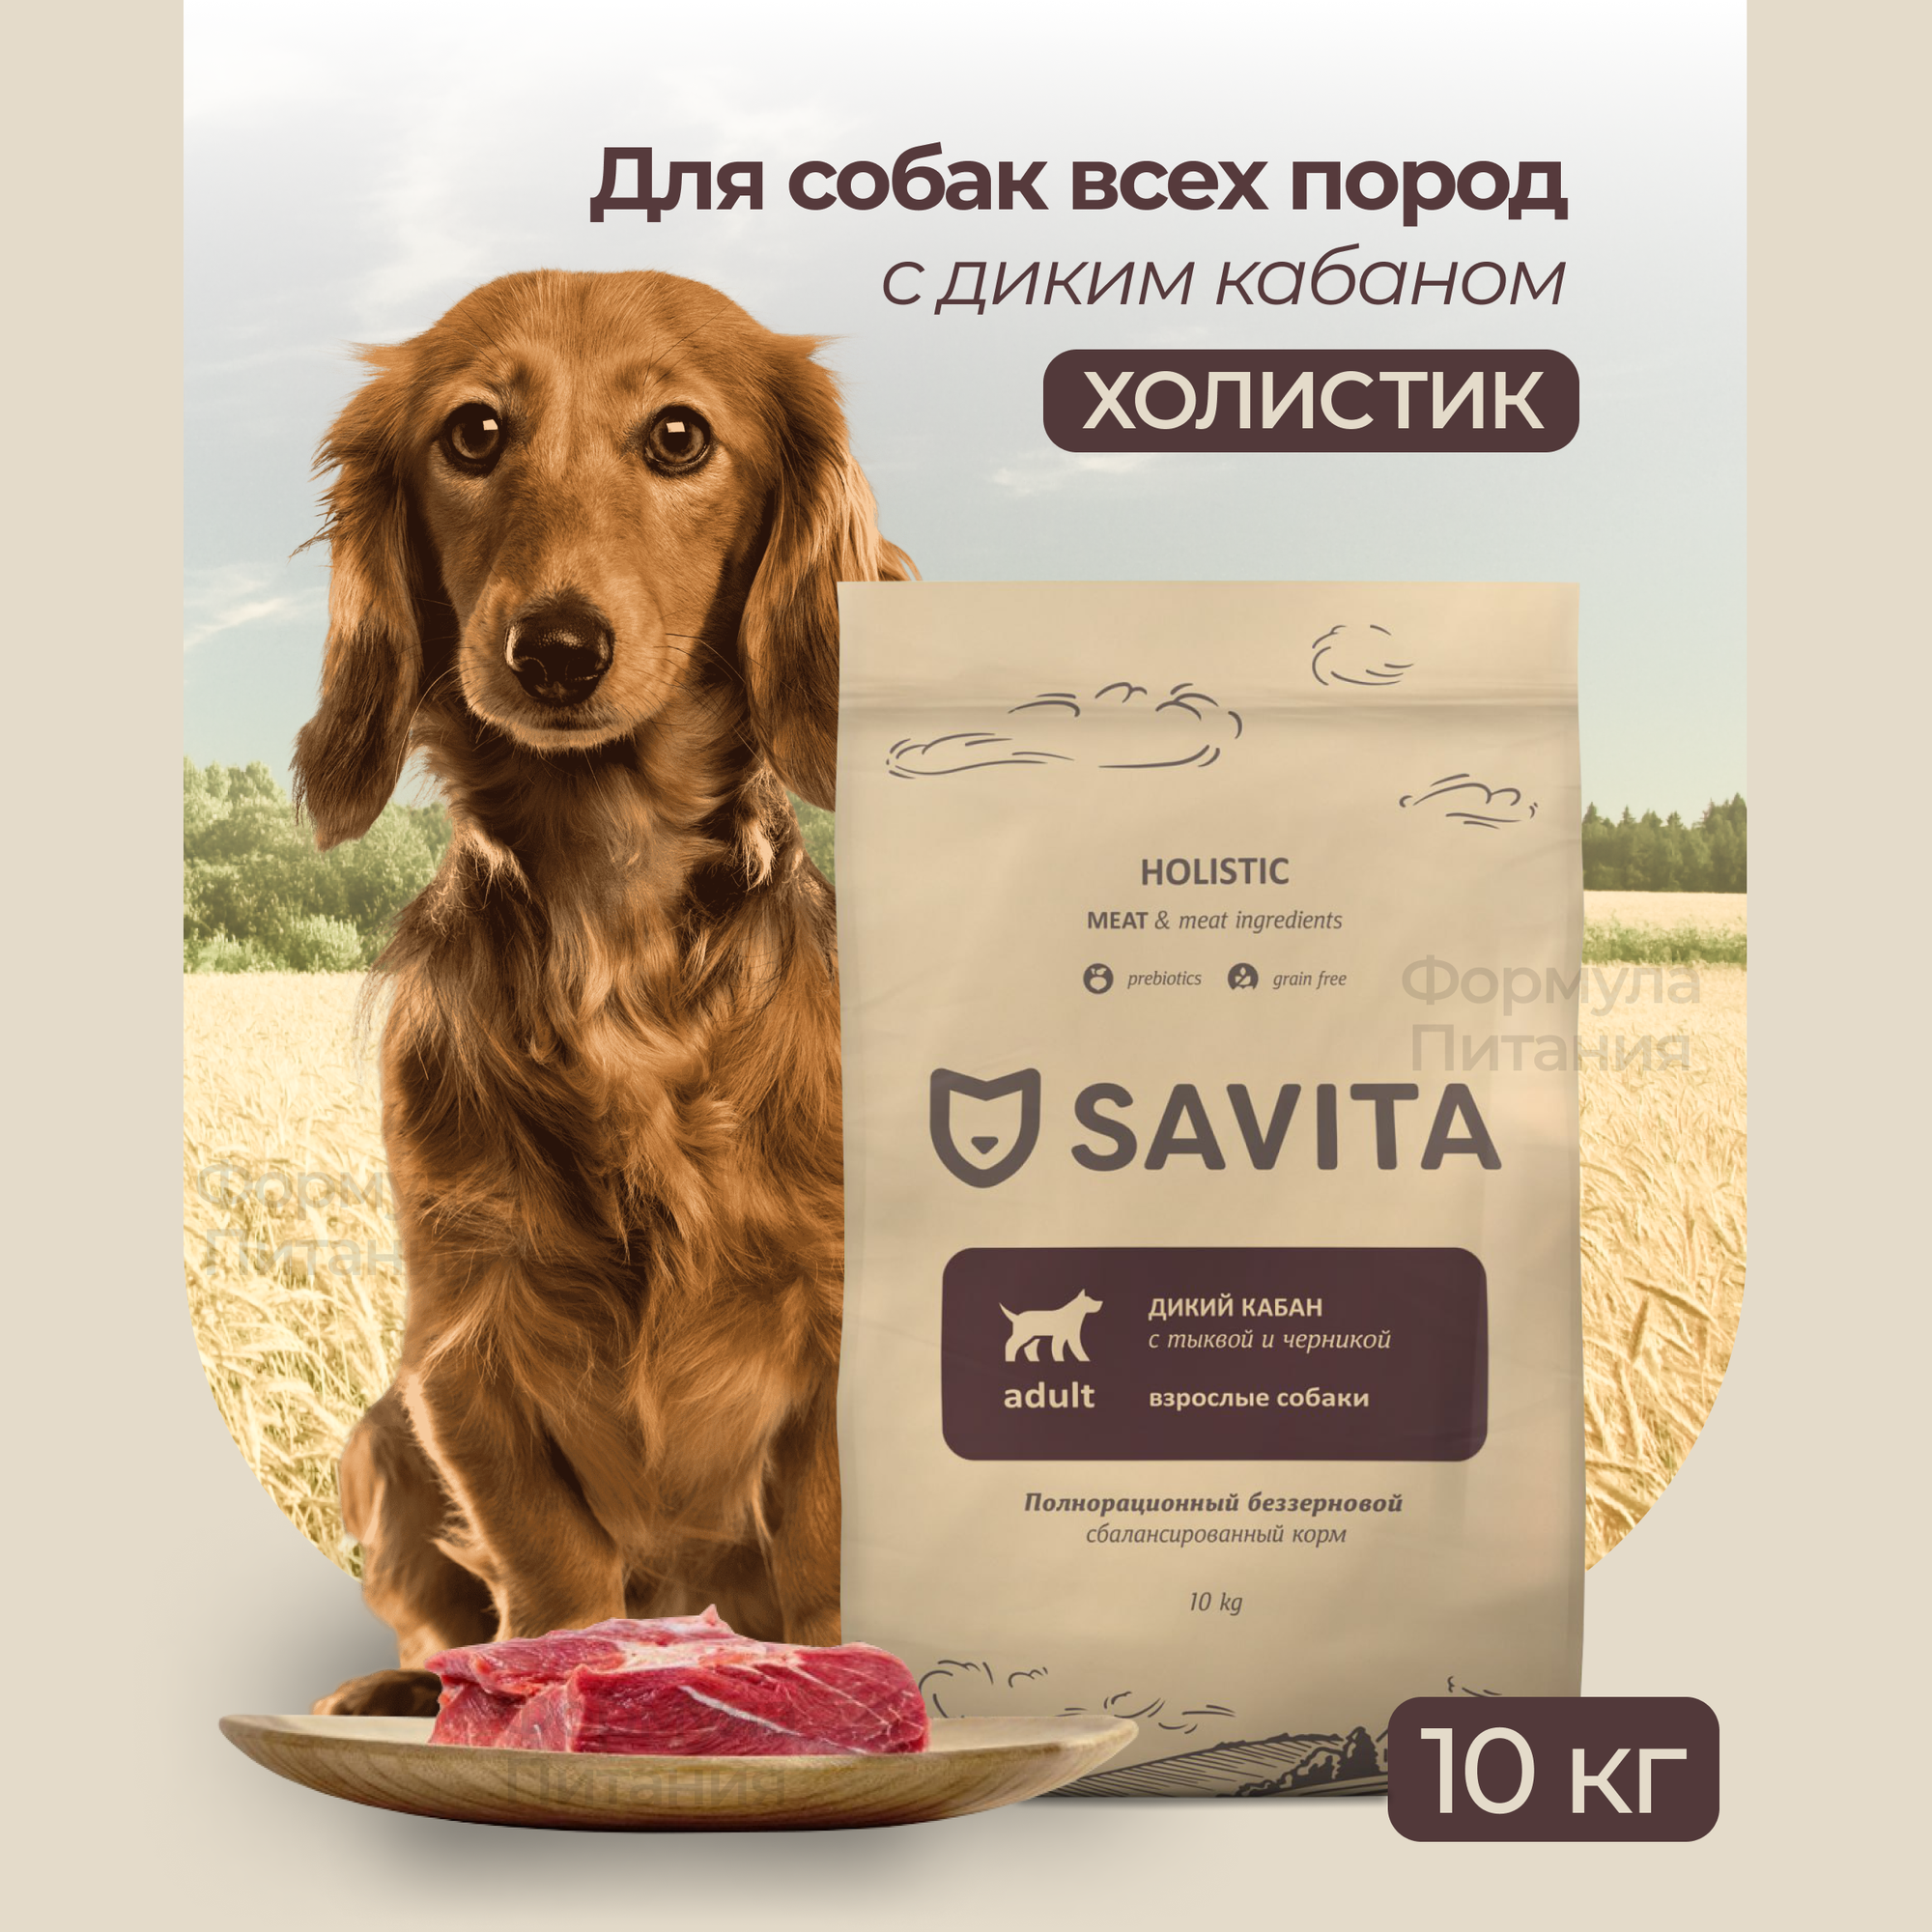 SAVITA для собак с мясом дикого кабана 10 кг. Сухой беззерновой корм, холистик